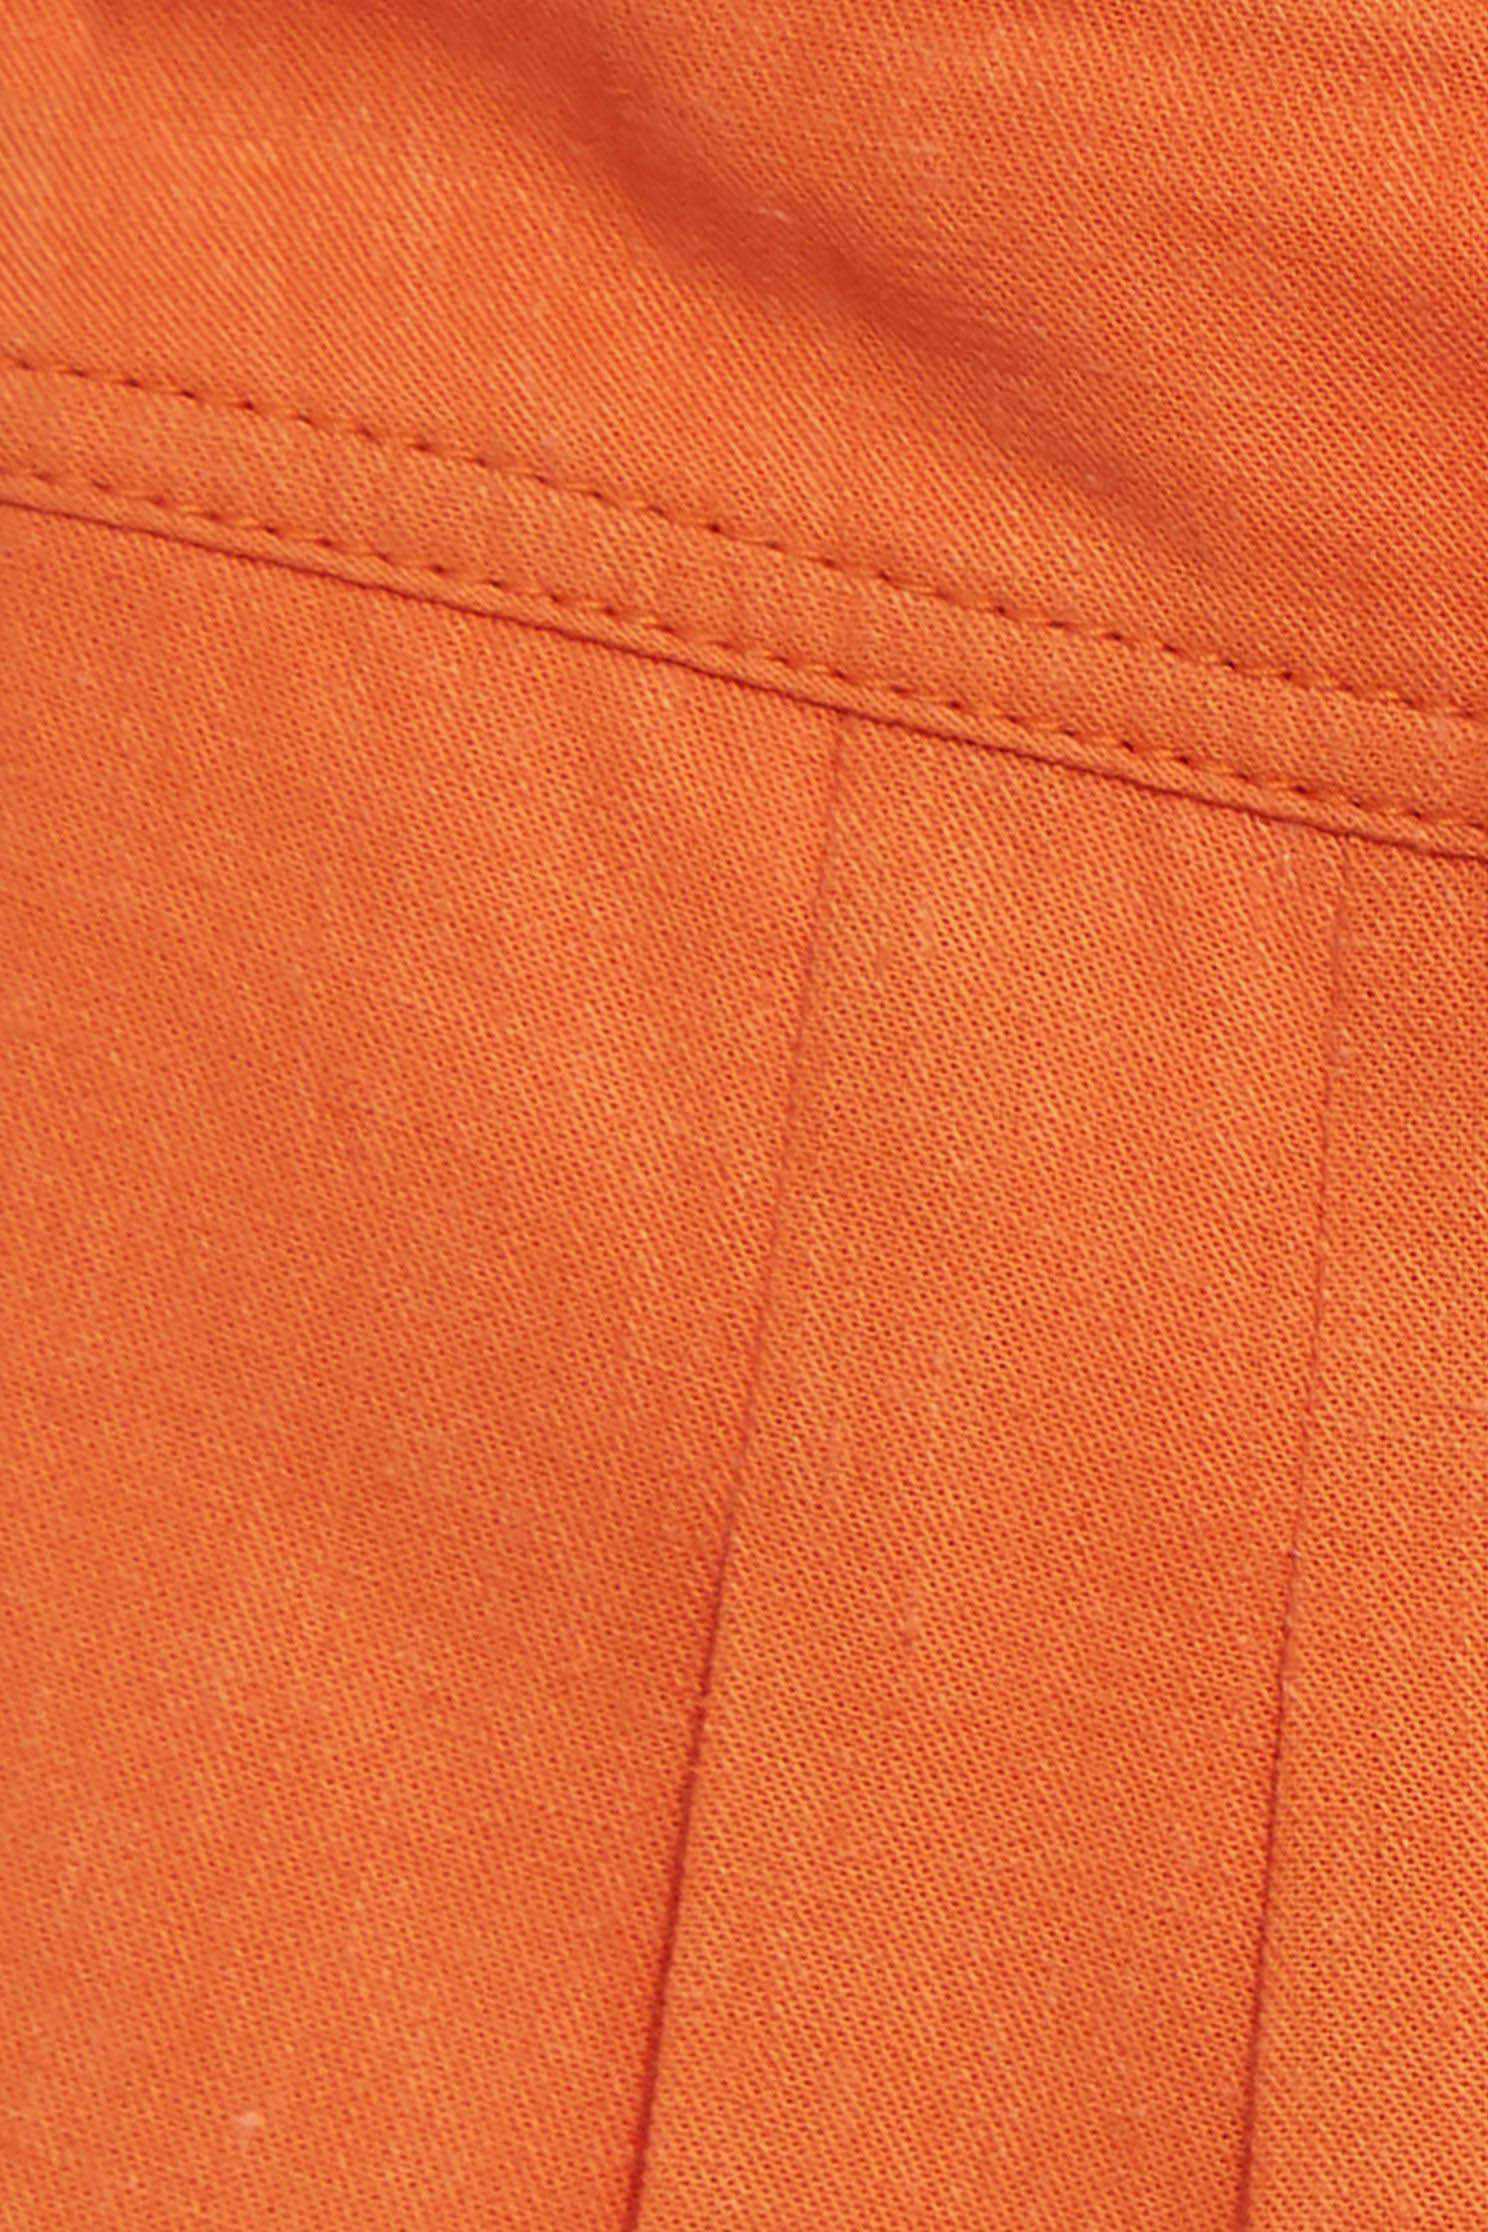 橘色棉麻短褲,休閒 短褲,棉麻 短褲,橘色 短褲橘色棉麻短褲,春夏穿搭,短褲